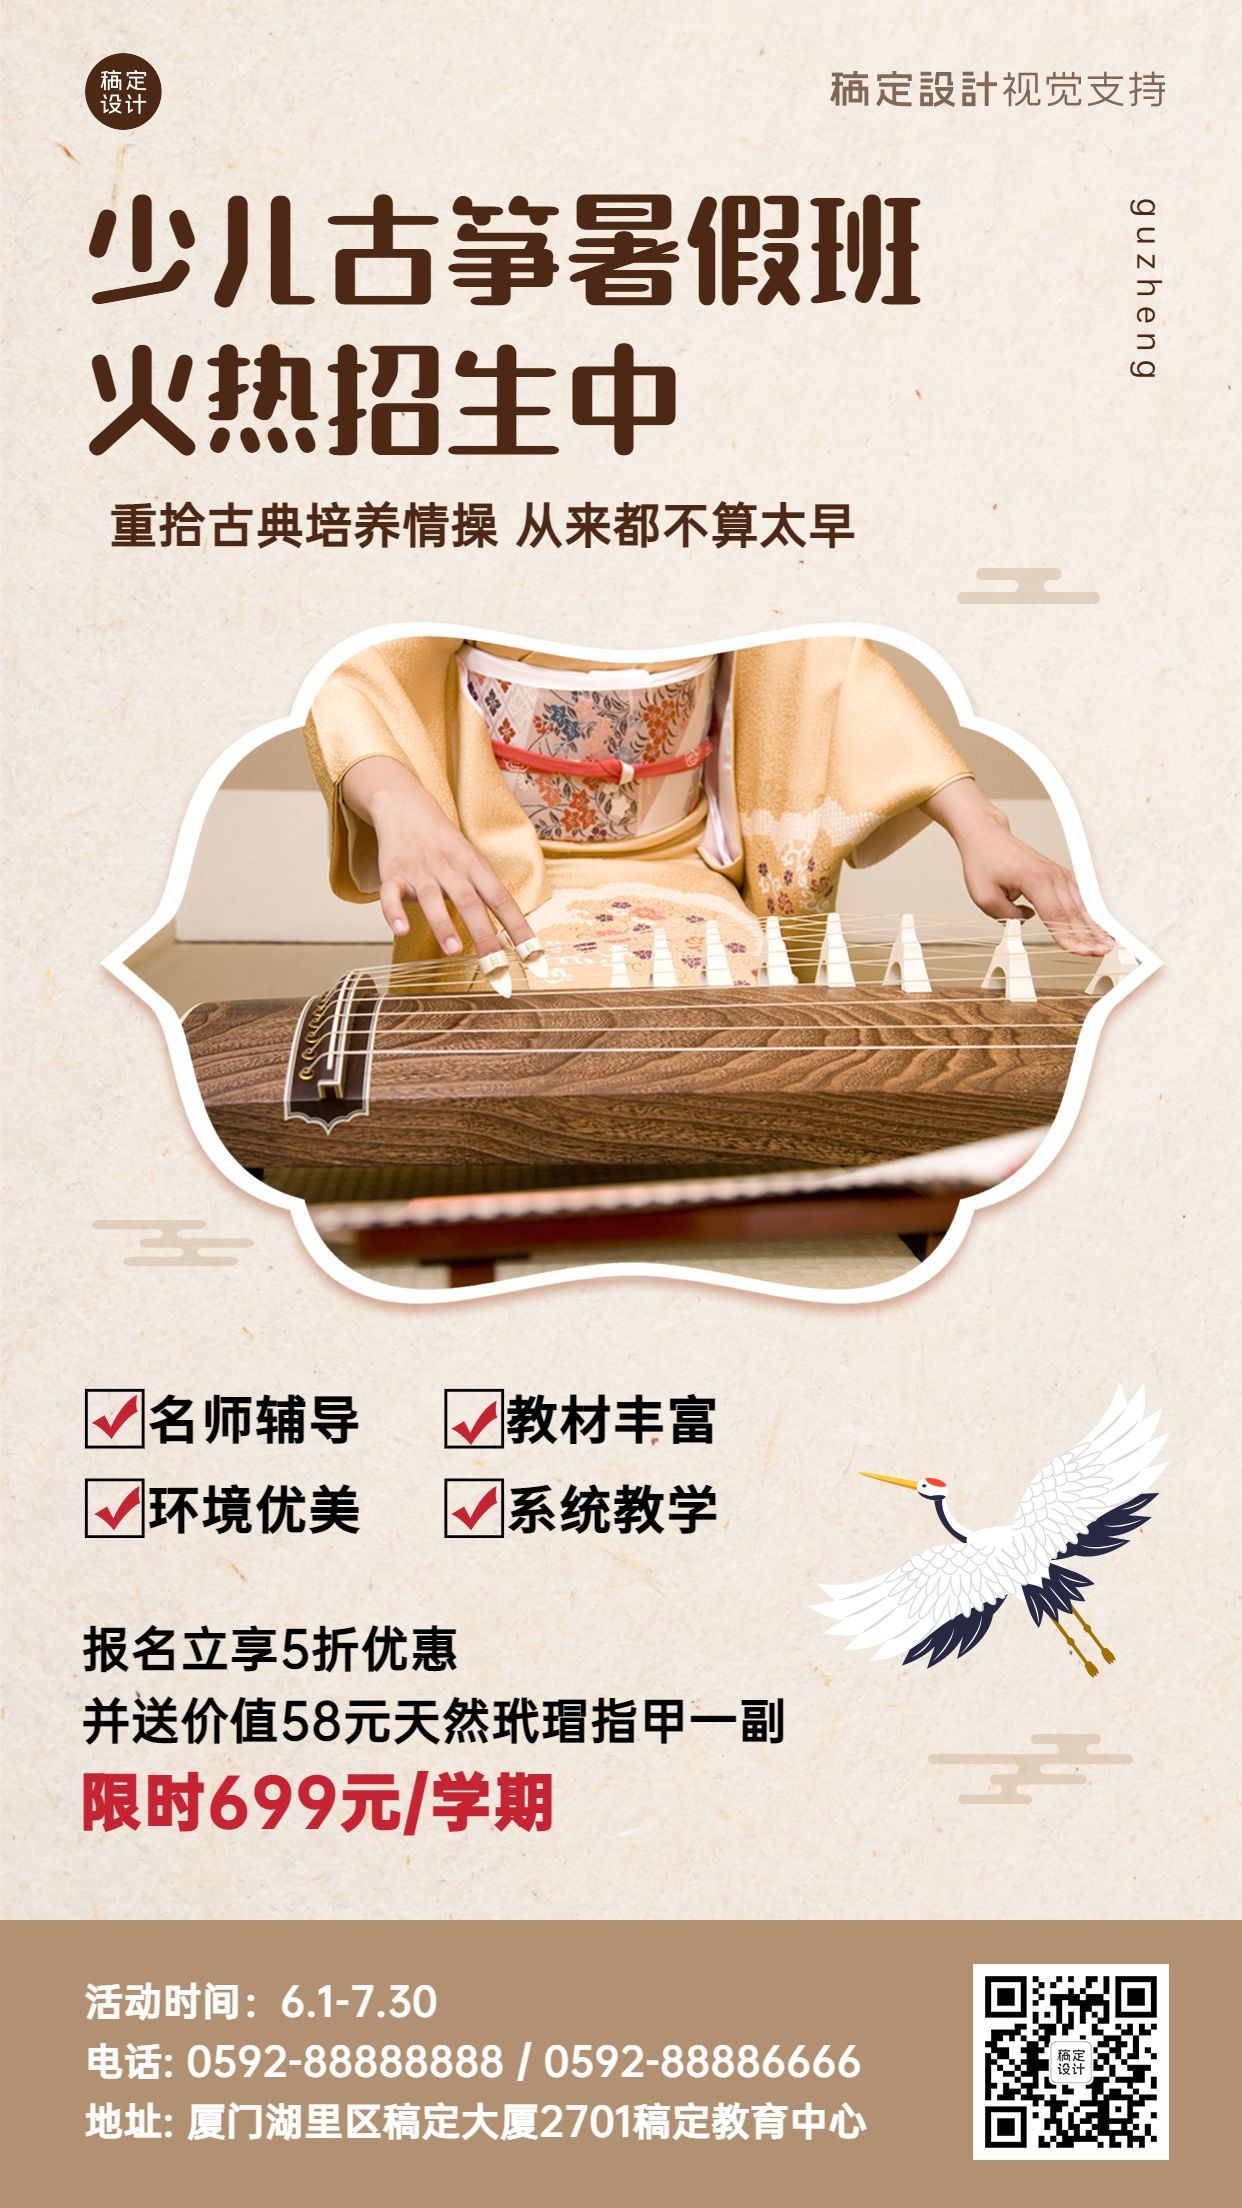 乐器古筝暑假招生教育促销海报预览效果